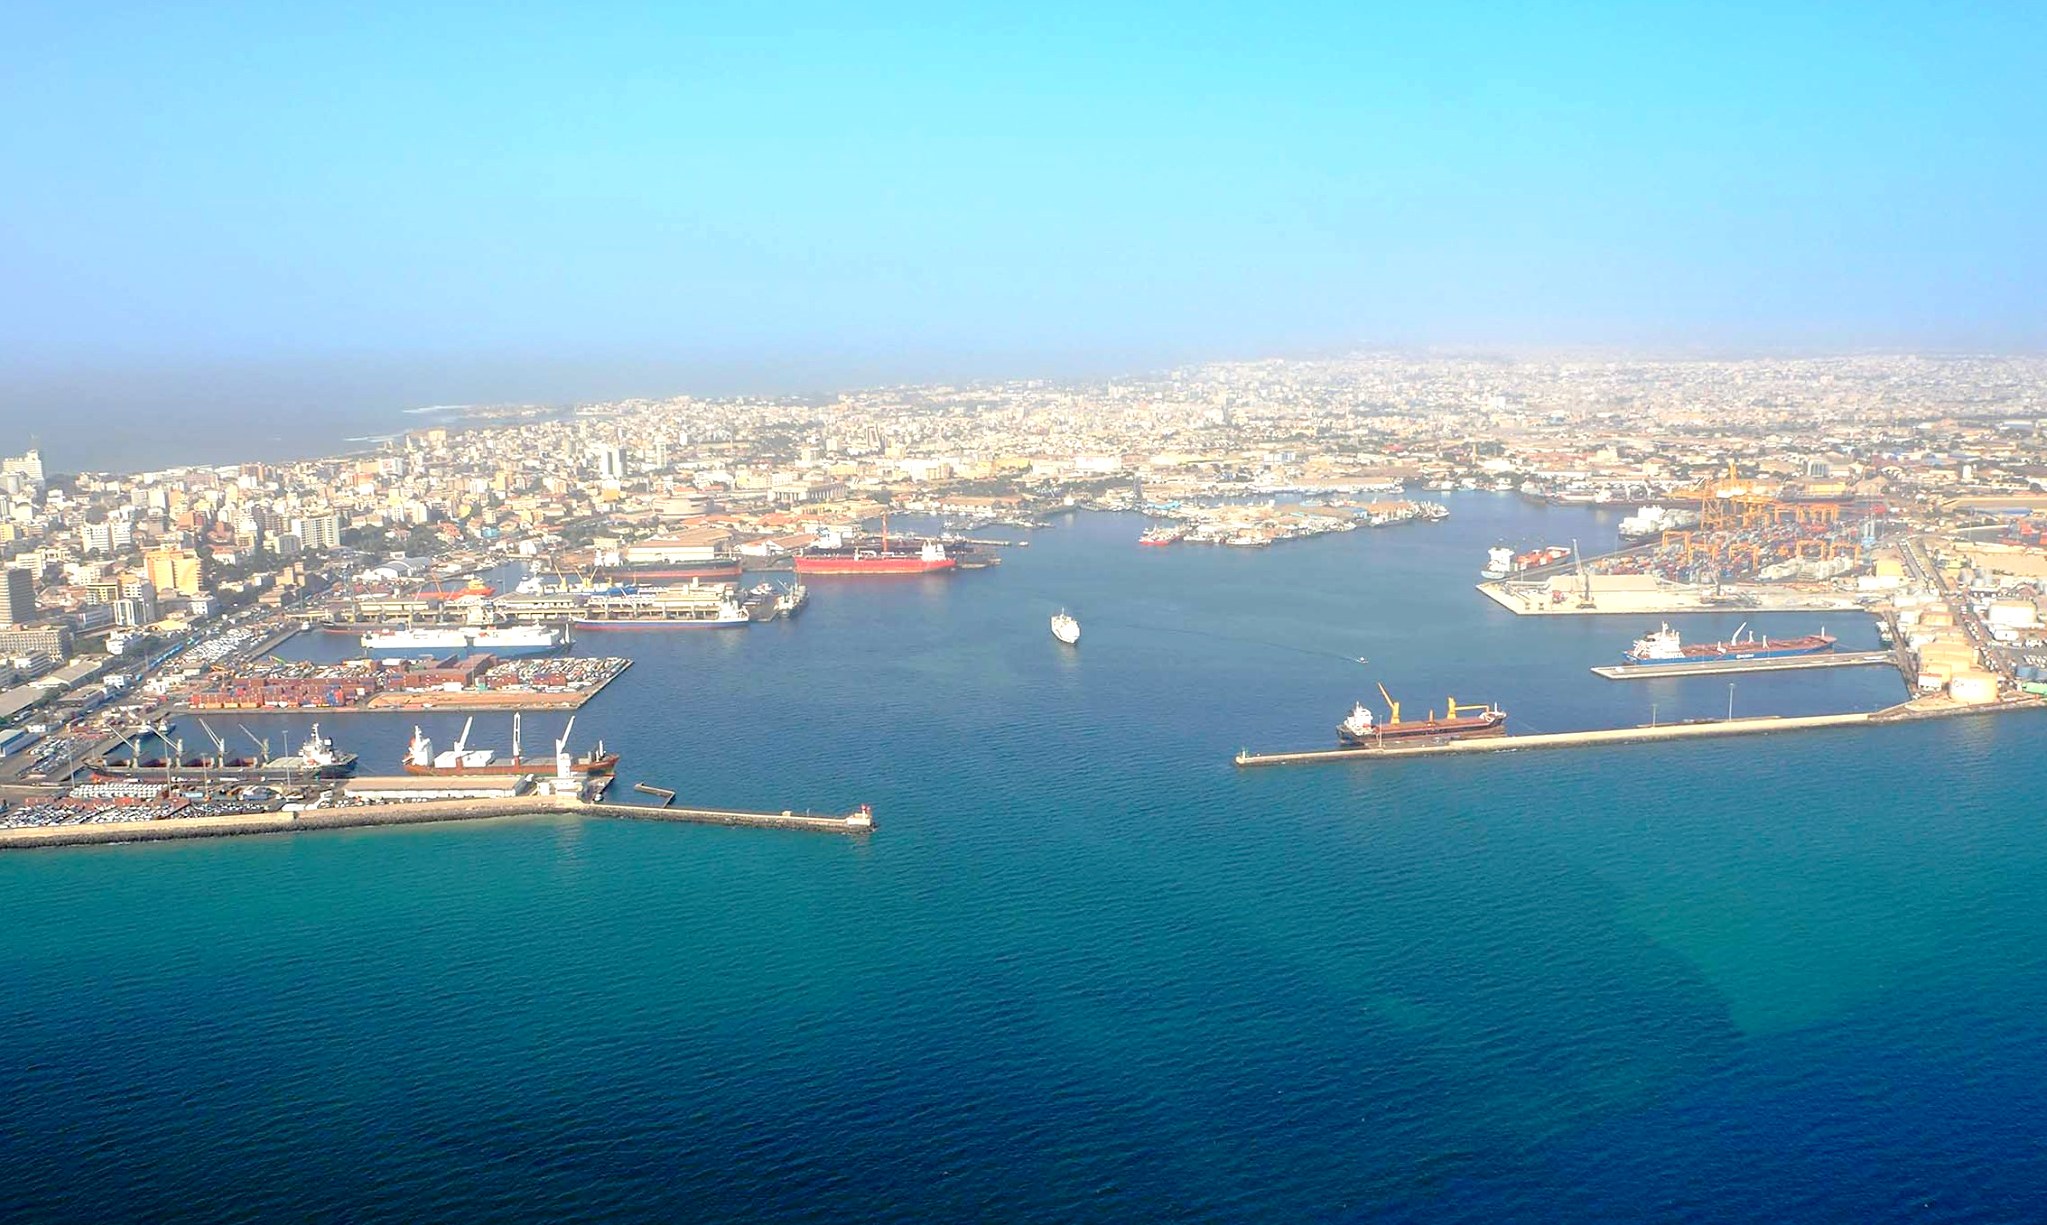 Le Port autonome de Dakar, destination la plus sûre de la côte ouest-africaine